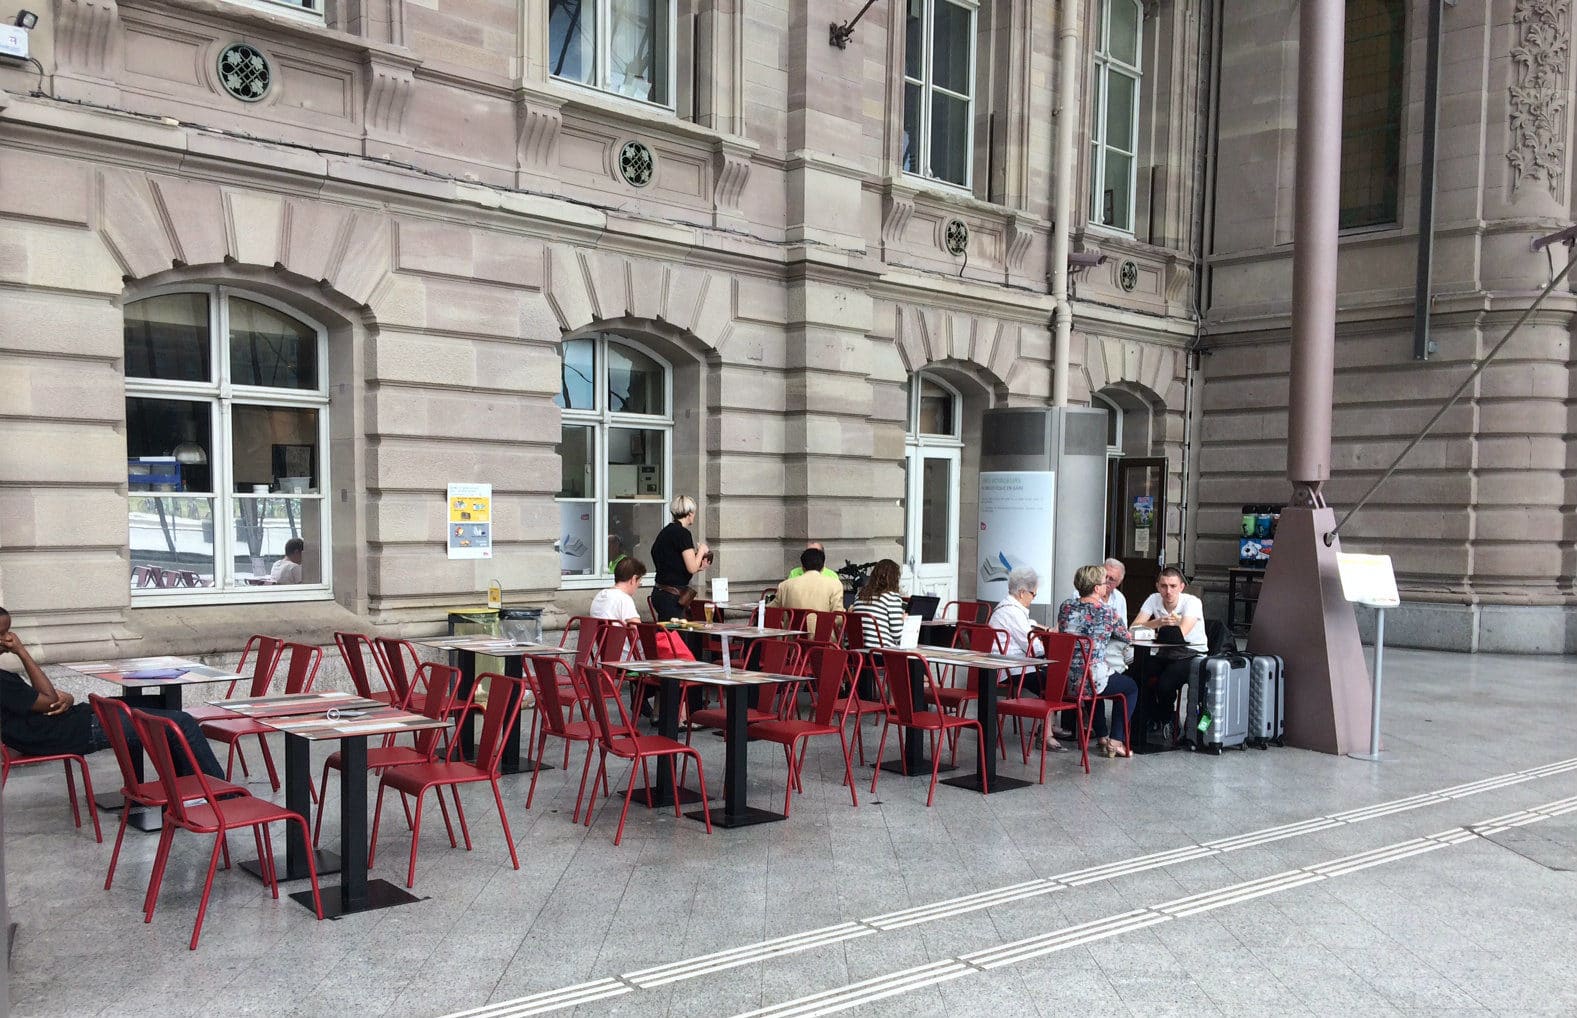 À la gare, les sièges remplacés par des terrasses où l’on peut rester gratuitement